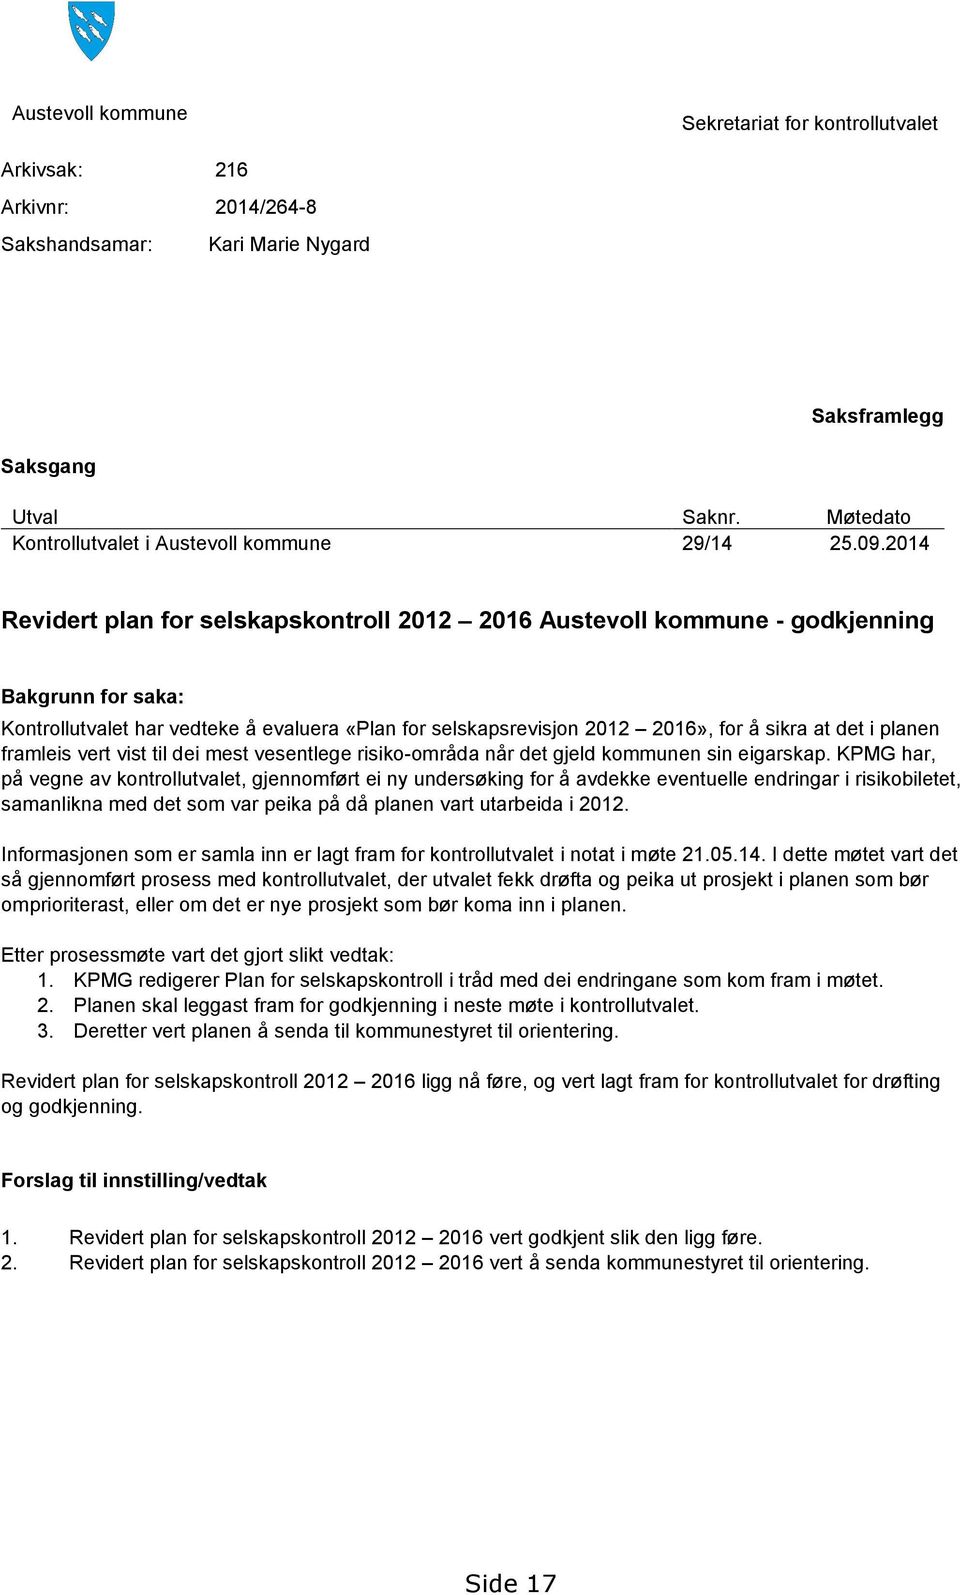 2014 Revidert plan for selskapskontroll 2012 2016 Austevoll kommune - godkjenning Bakgrunn for saka: Kontrollutvalet har vedteke å evaluera «Plan for selskapsrevisjon 2012 2016», for å sikra at det i